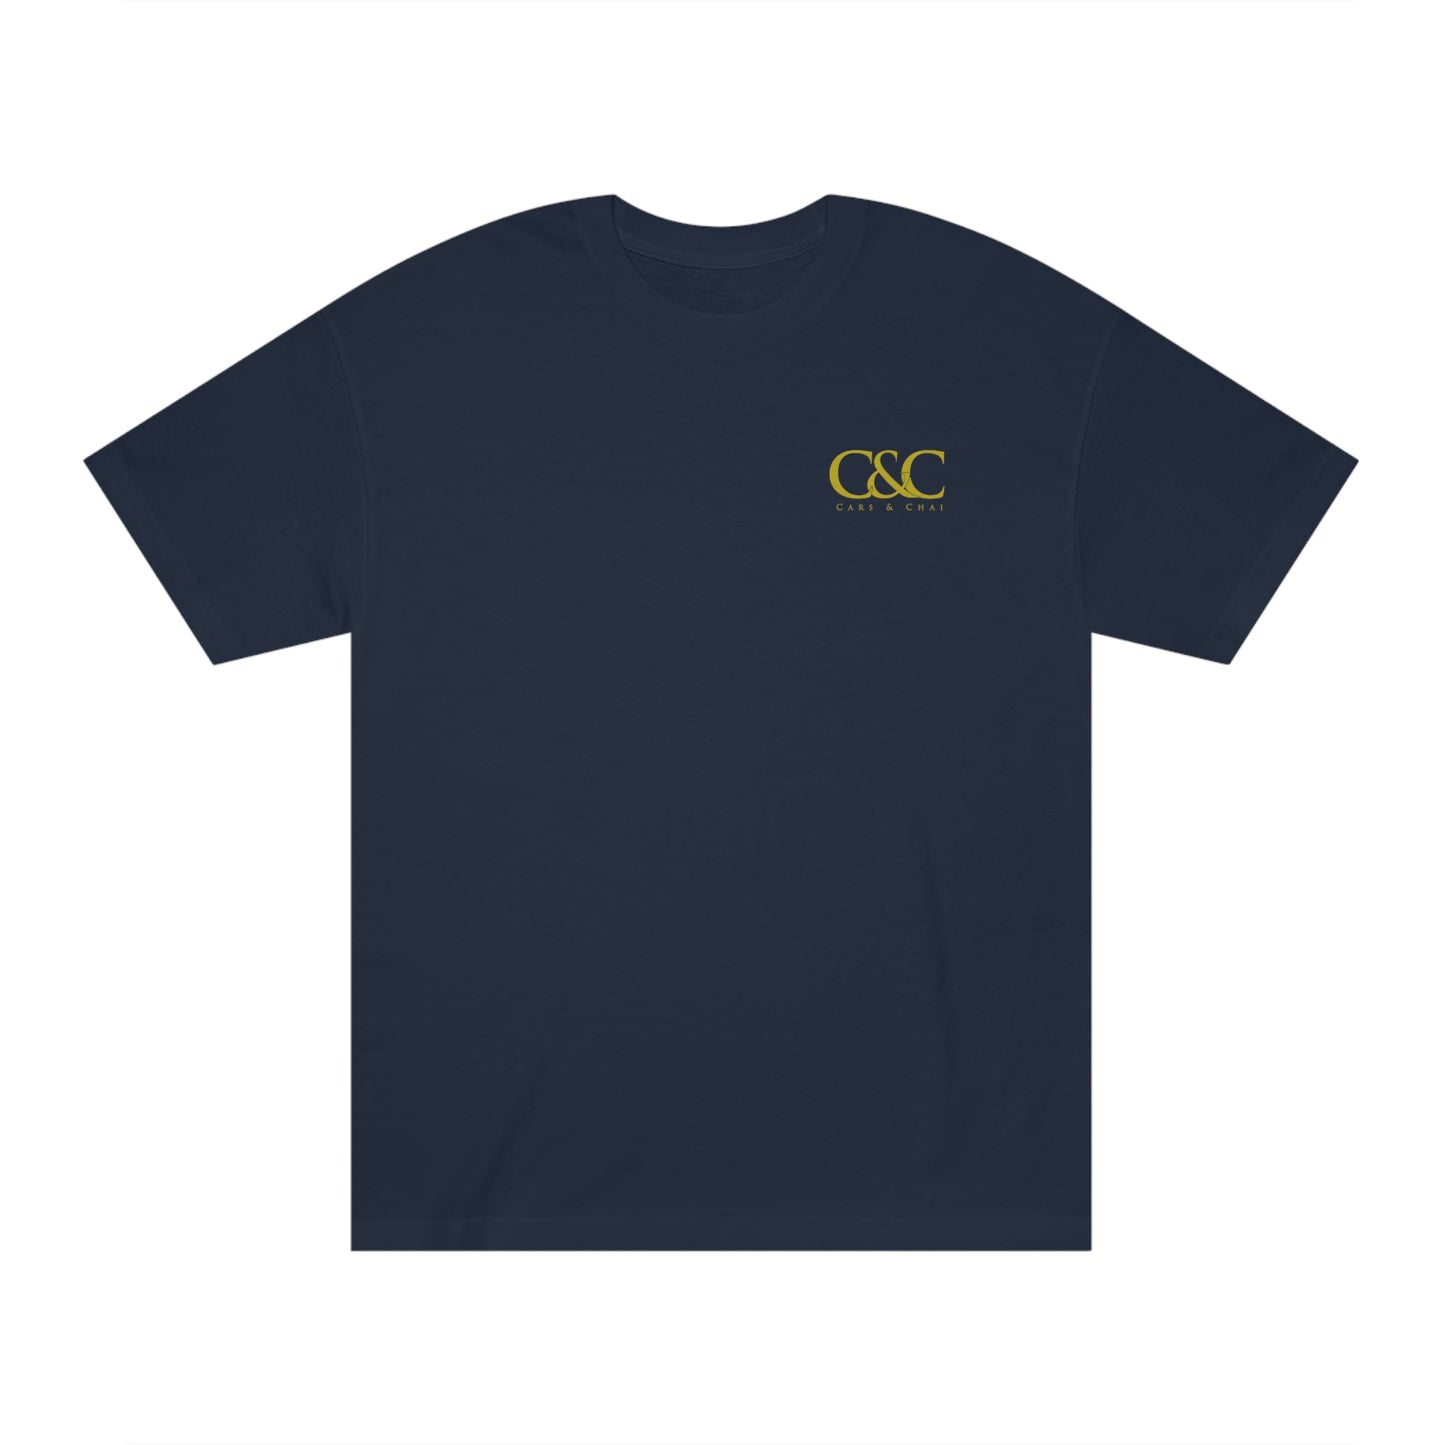 C&C - Classic T-Shirt